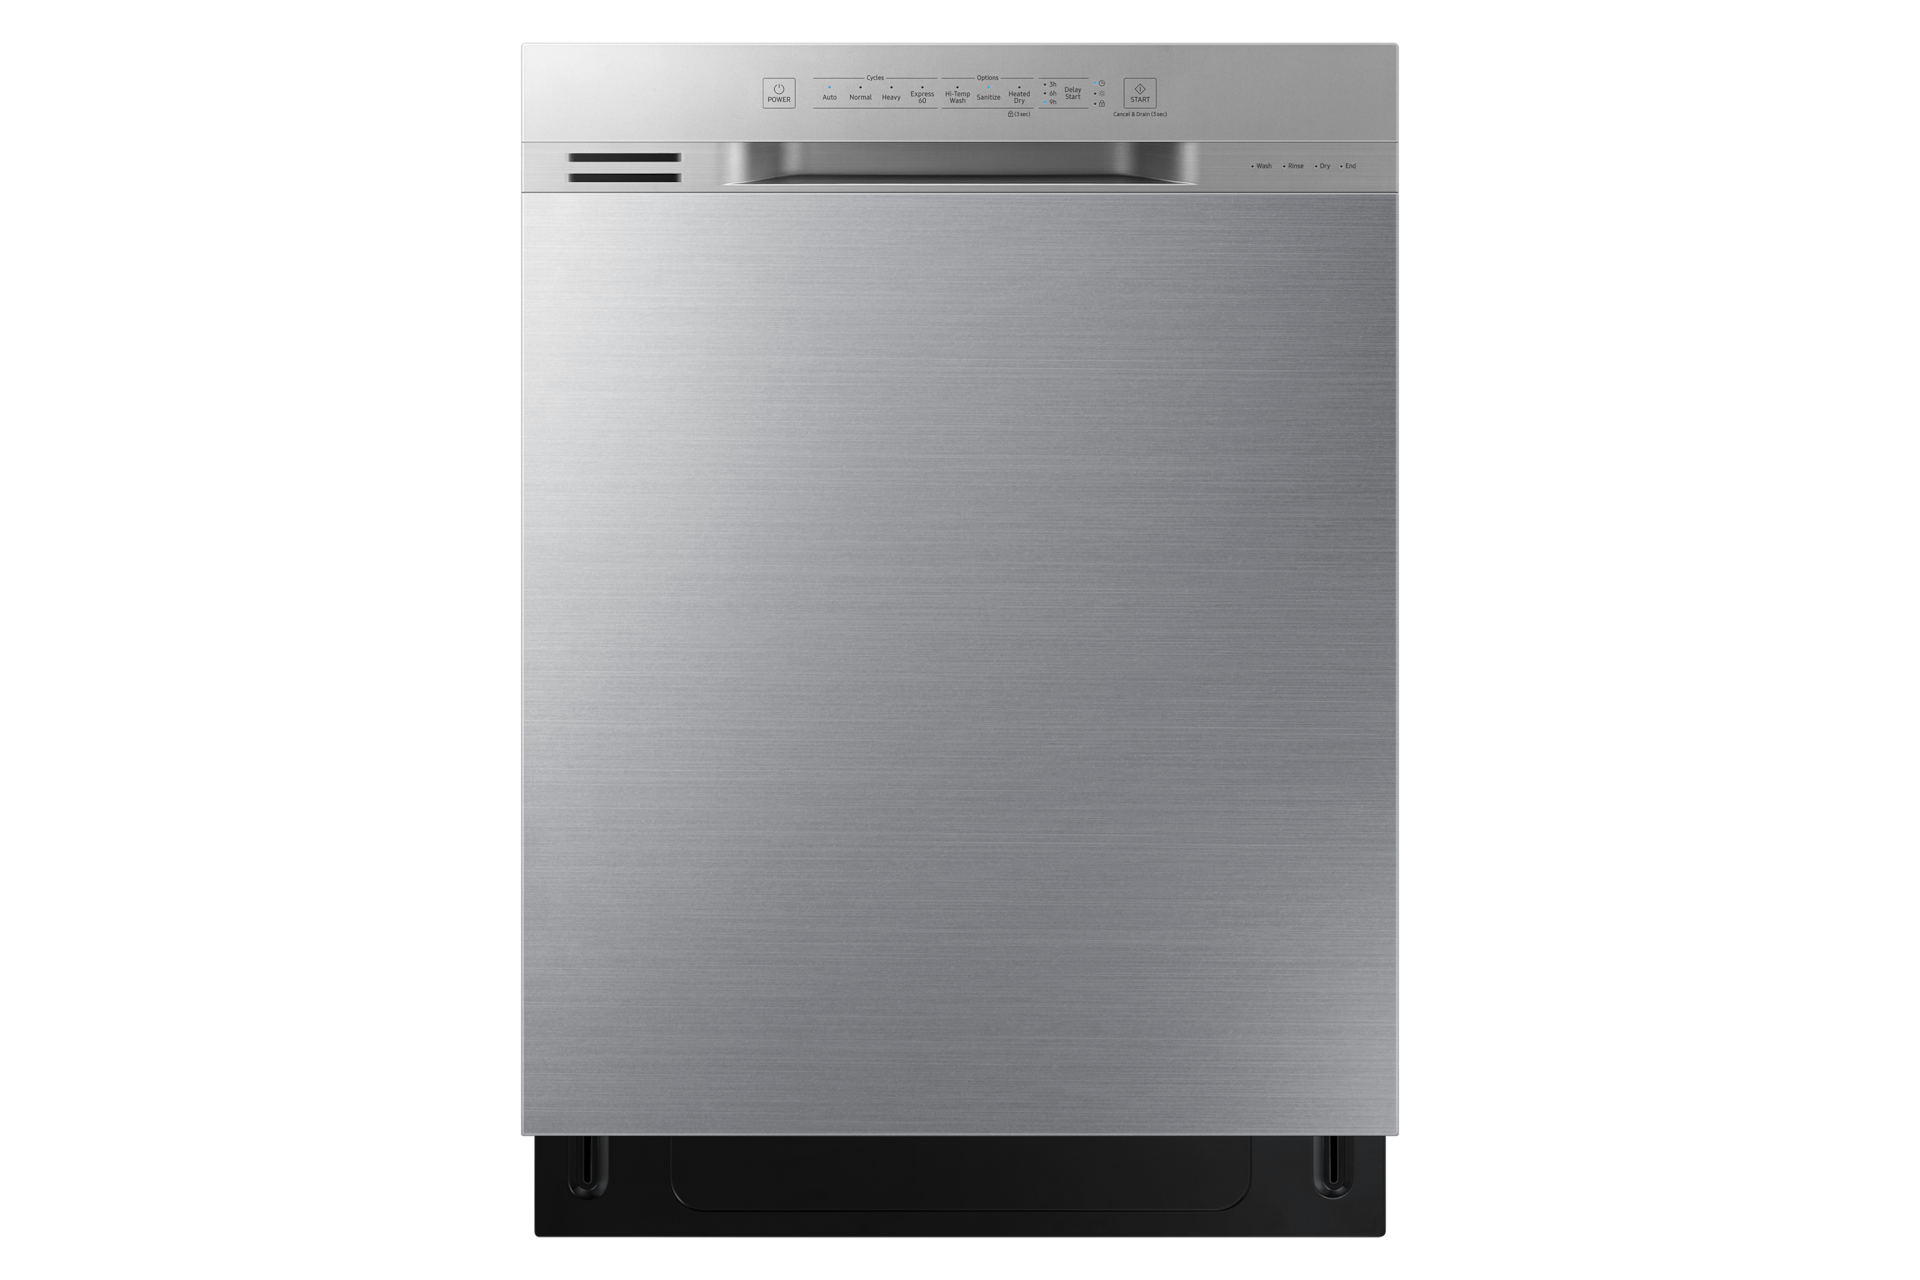 Samsung DW80N3030US Dishwasher with 